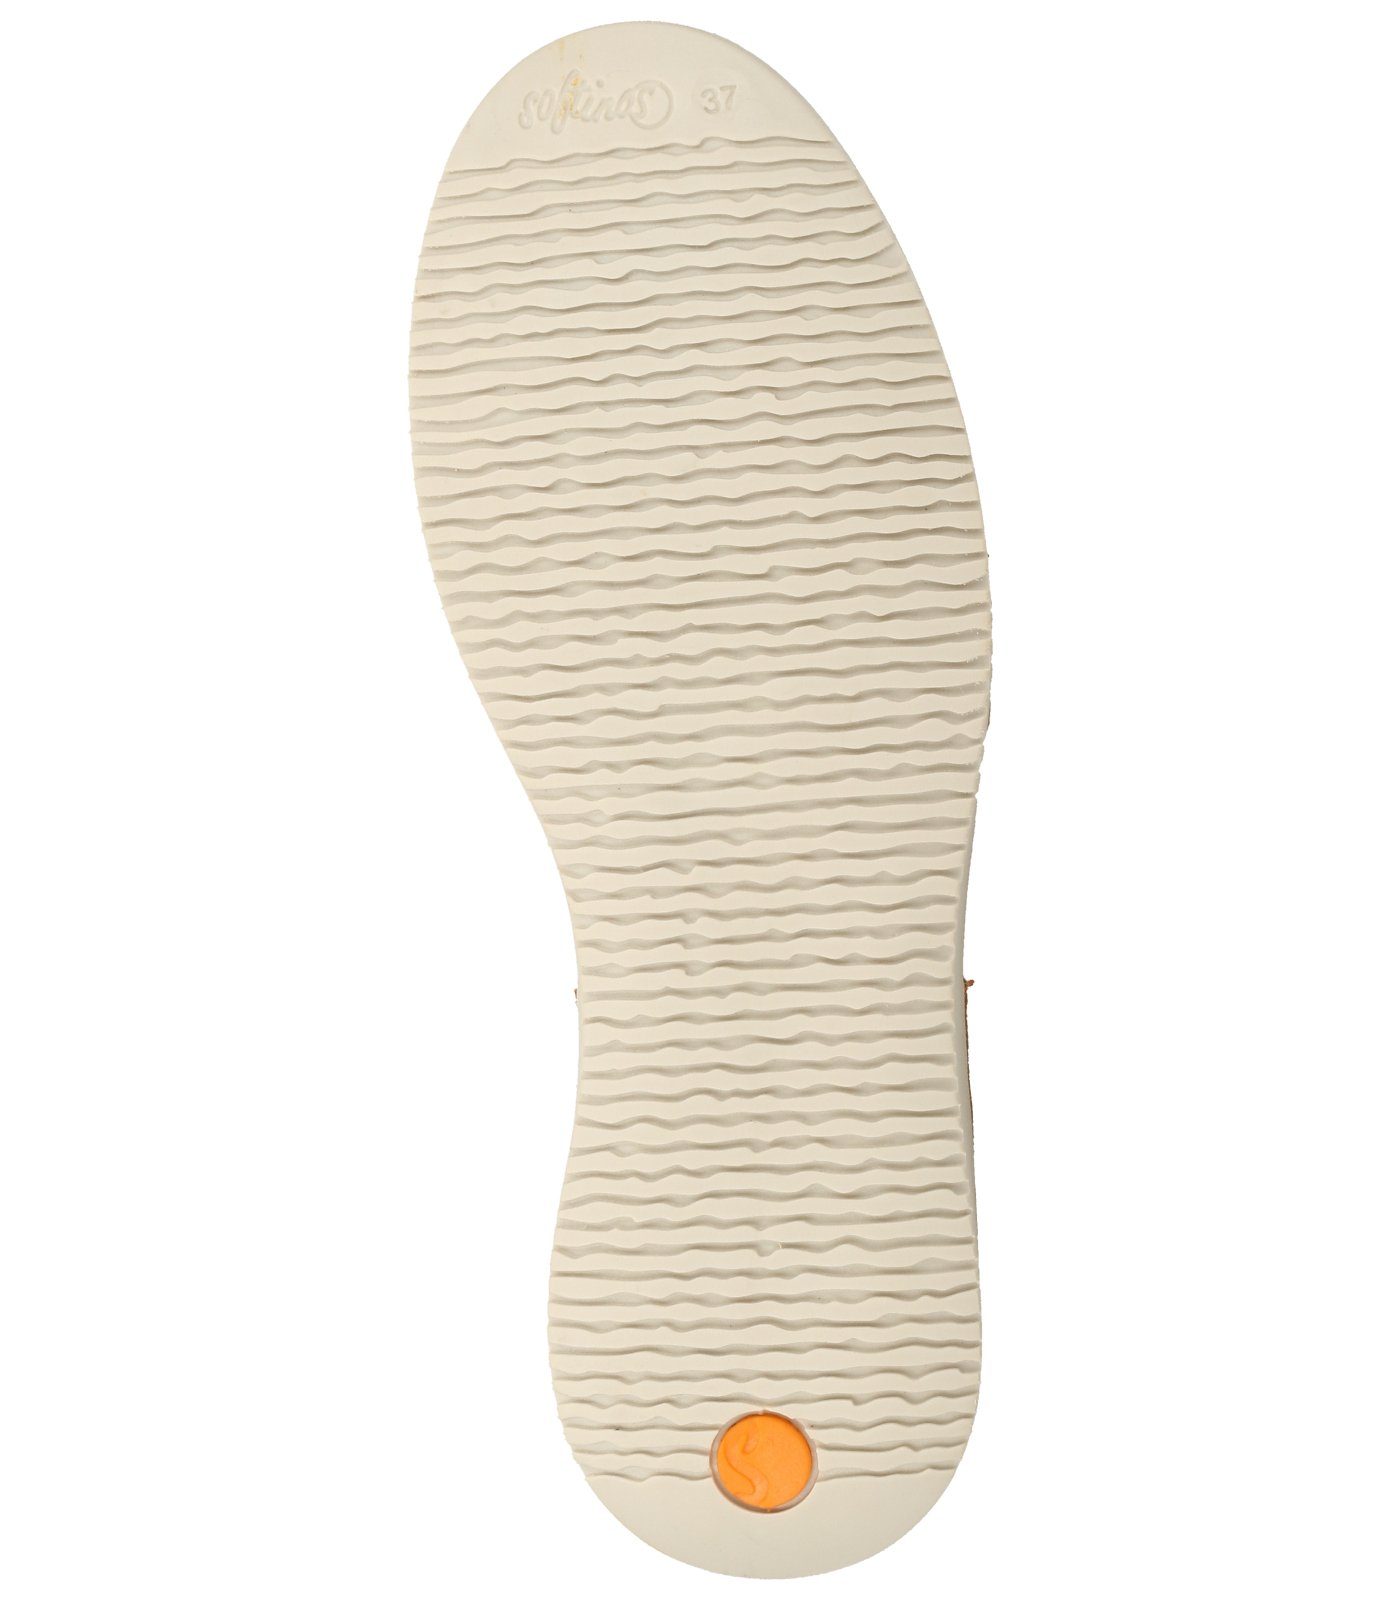 Riemchensandalette softinos Orange Sandalen Leder/Textil